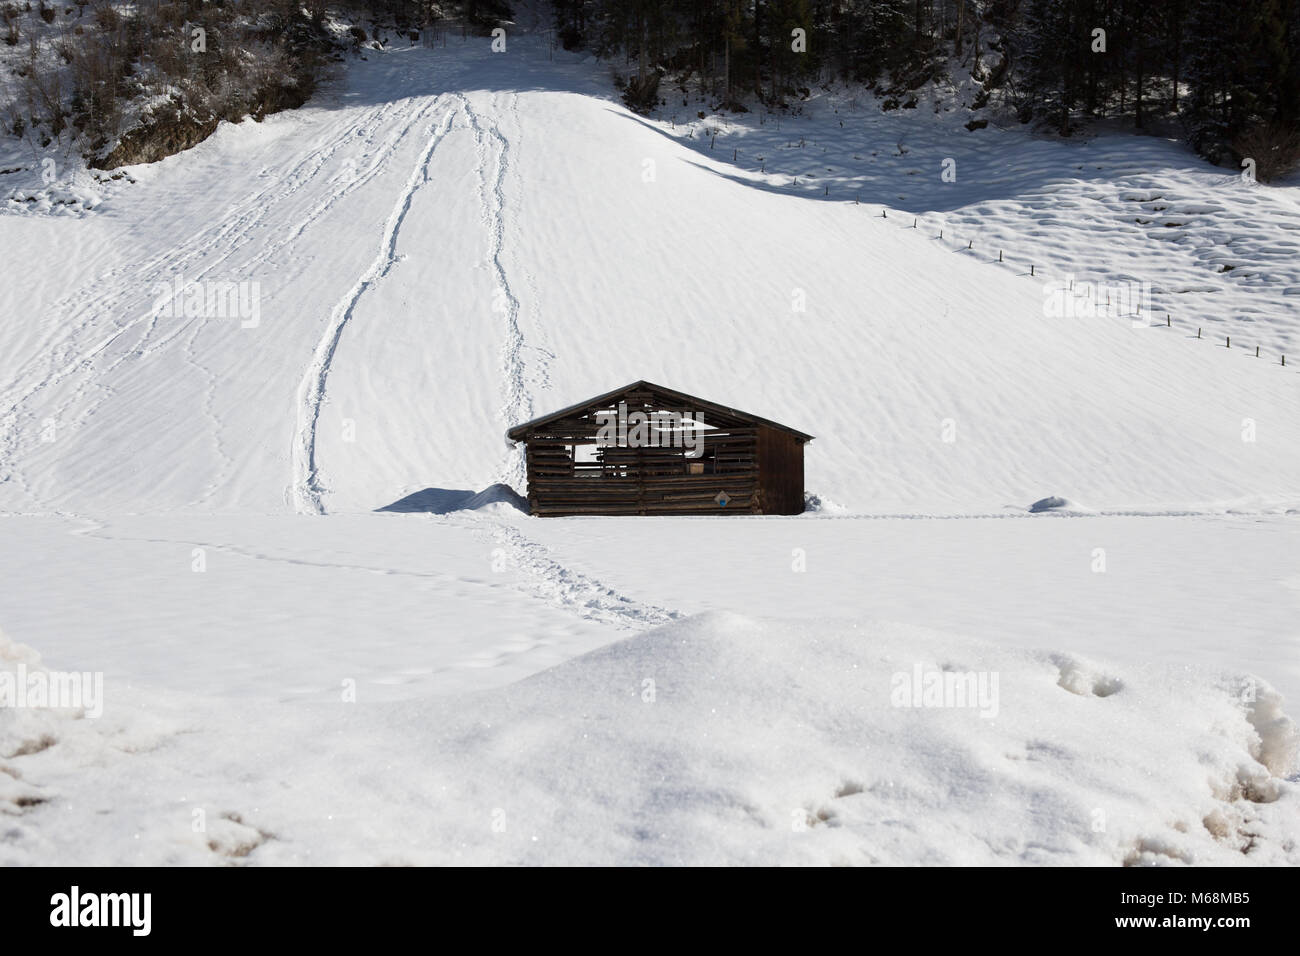 Europa Austria Alpes Großarl -una cabaña en las montañas de nieve Foto de stock